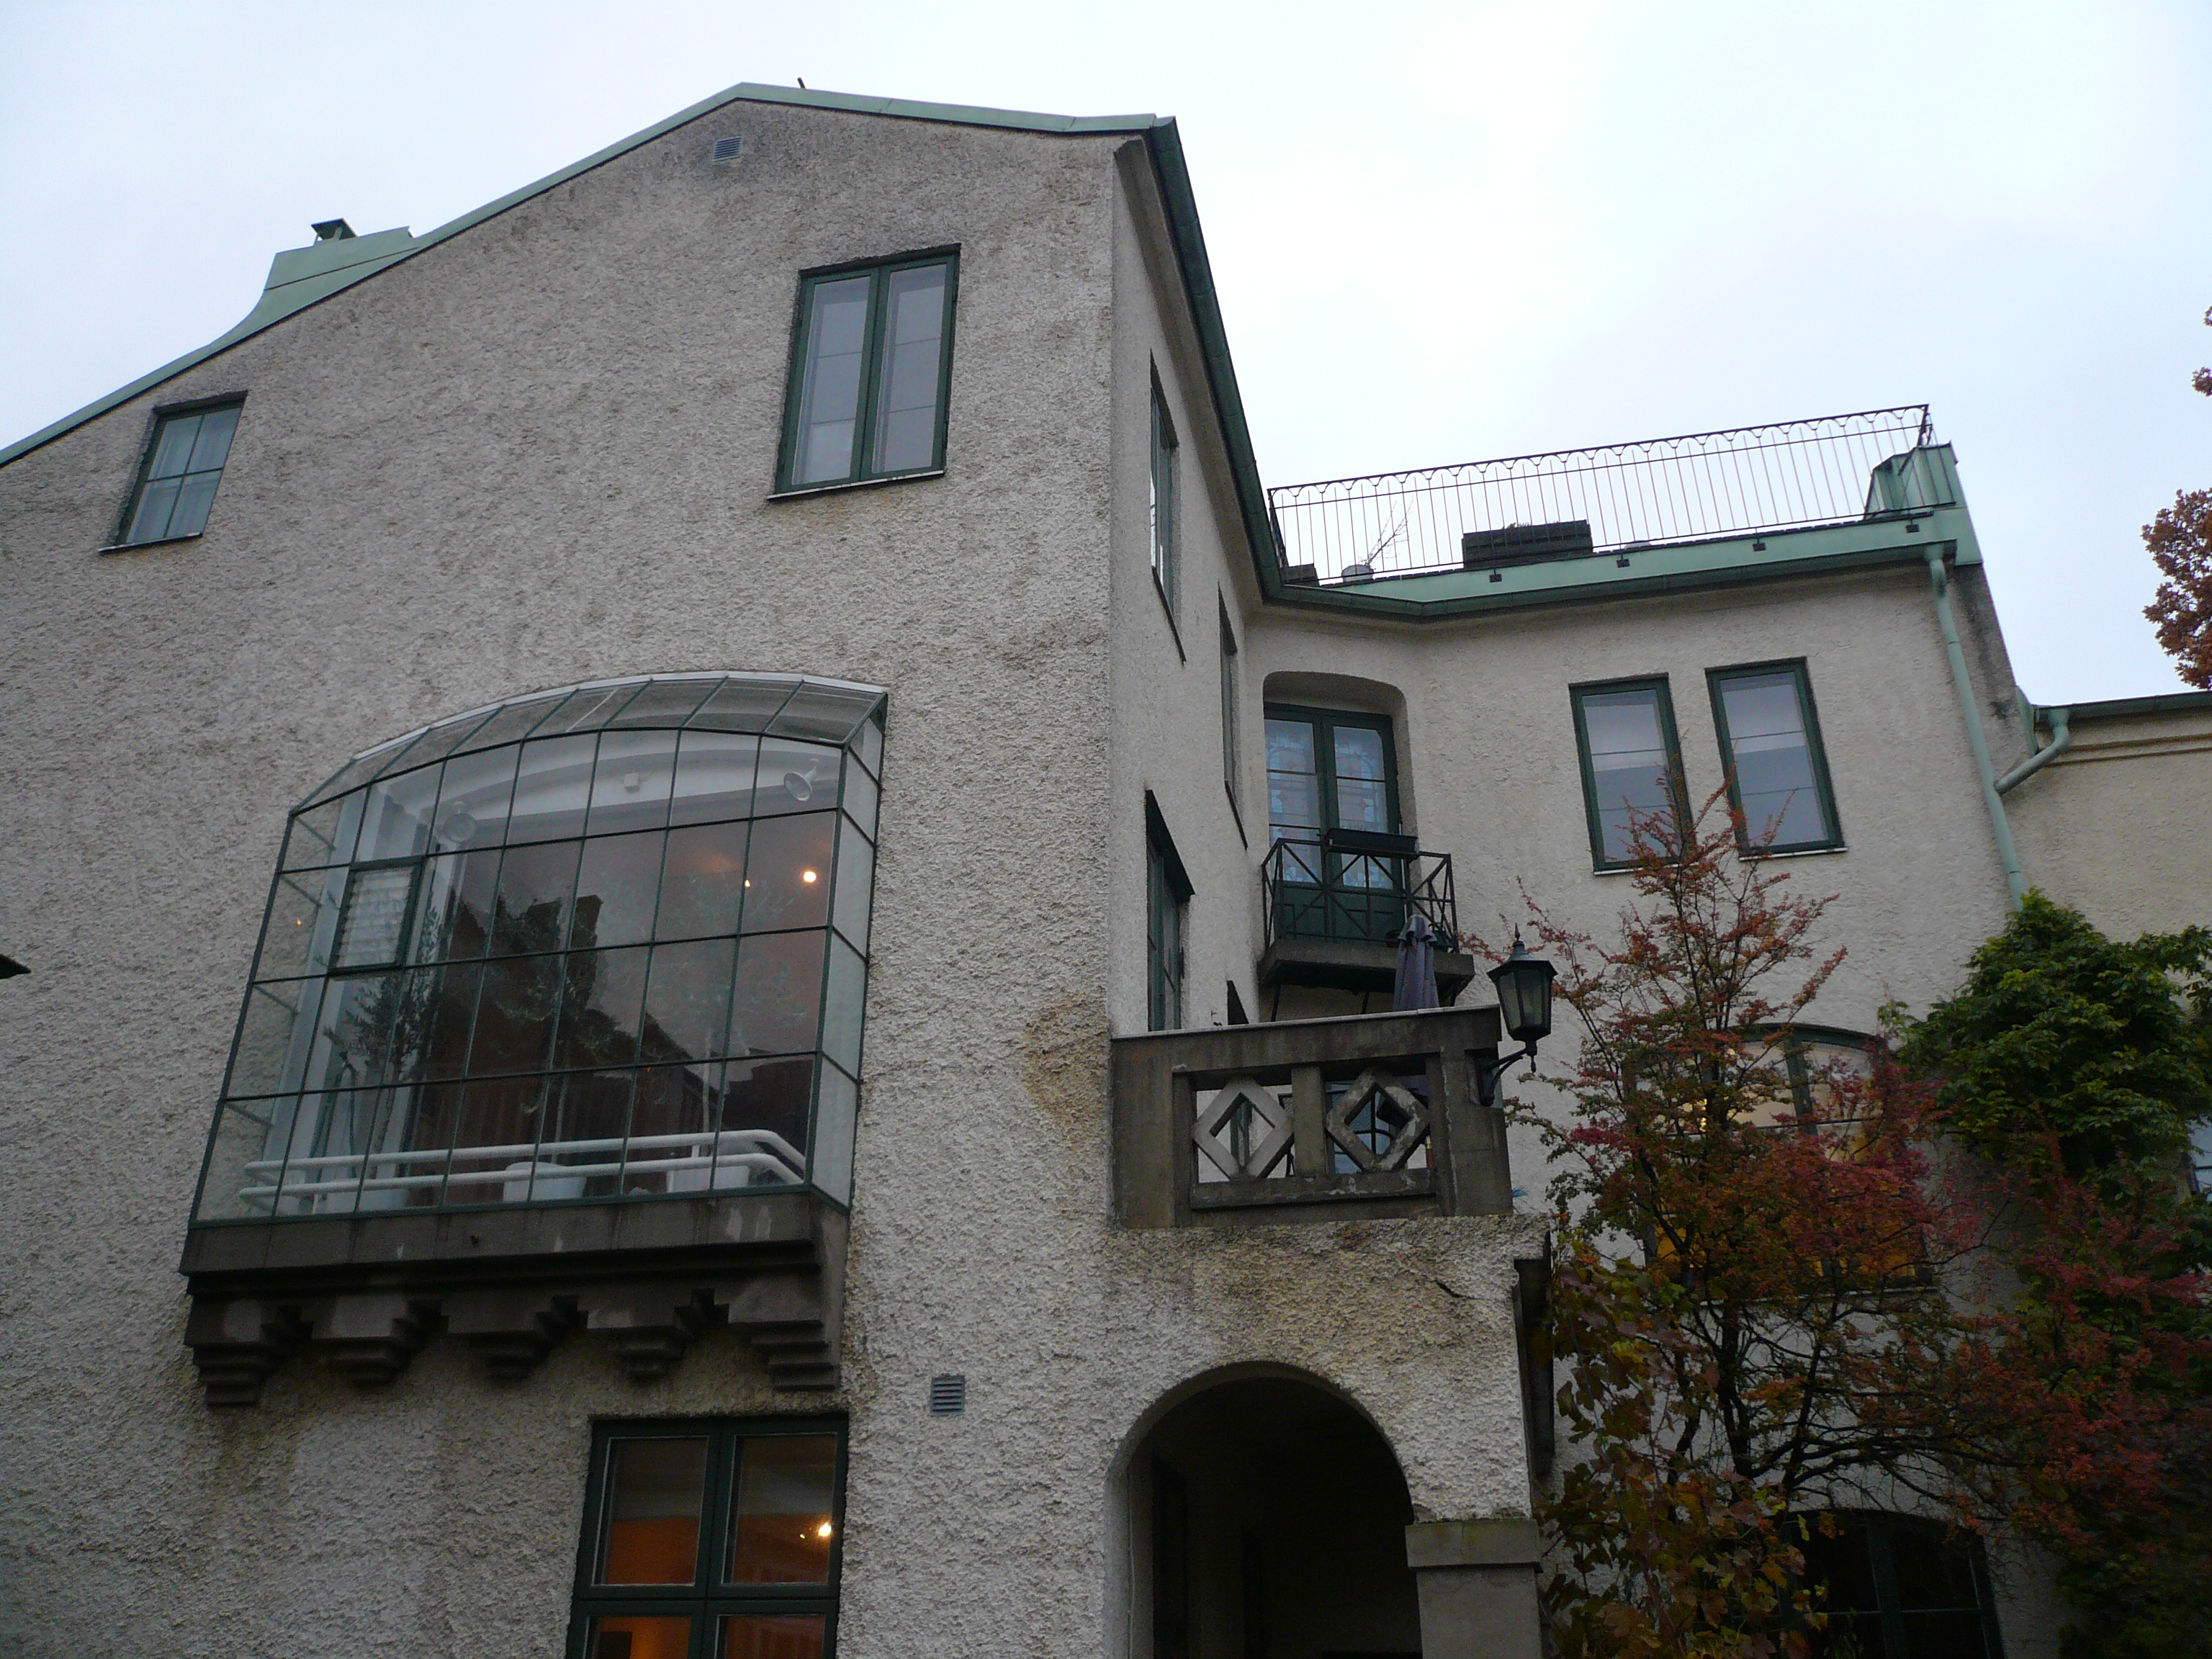 Zettervallska villan. Huvudbyggnadens södra fasad.